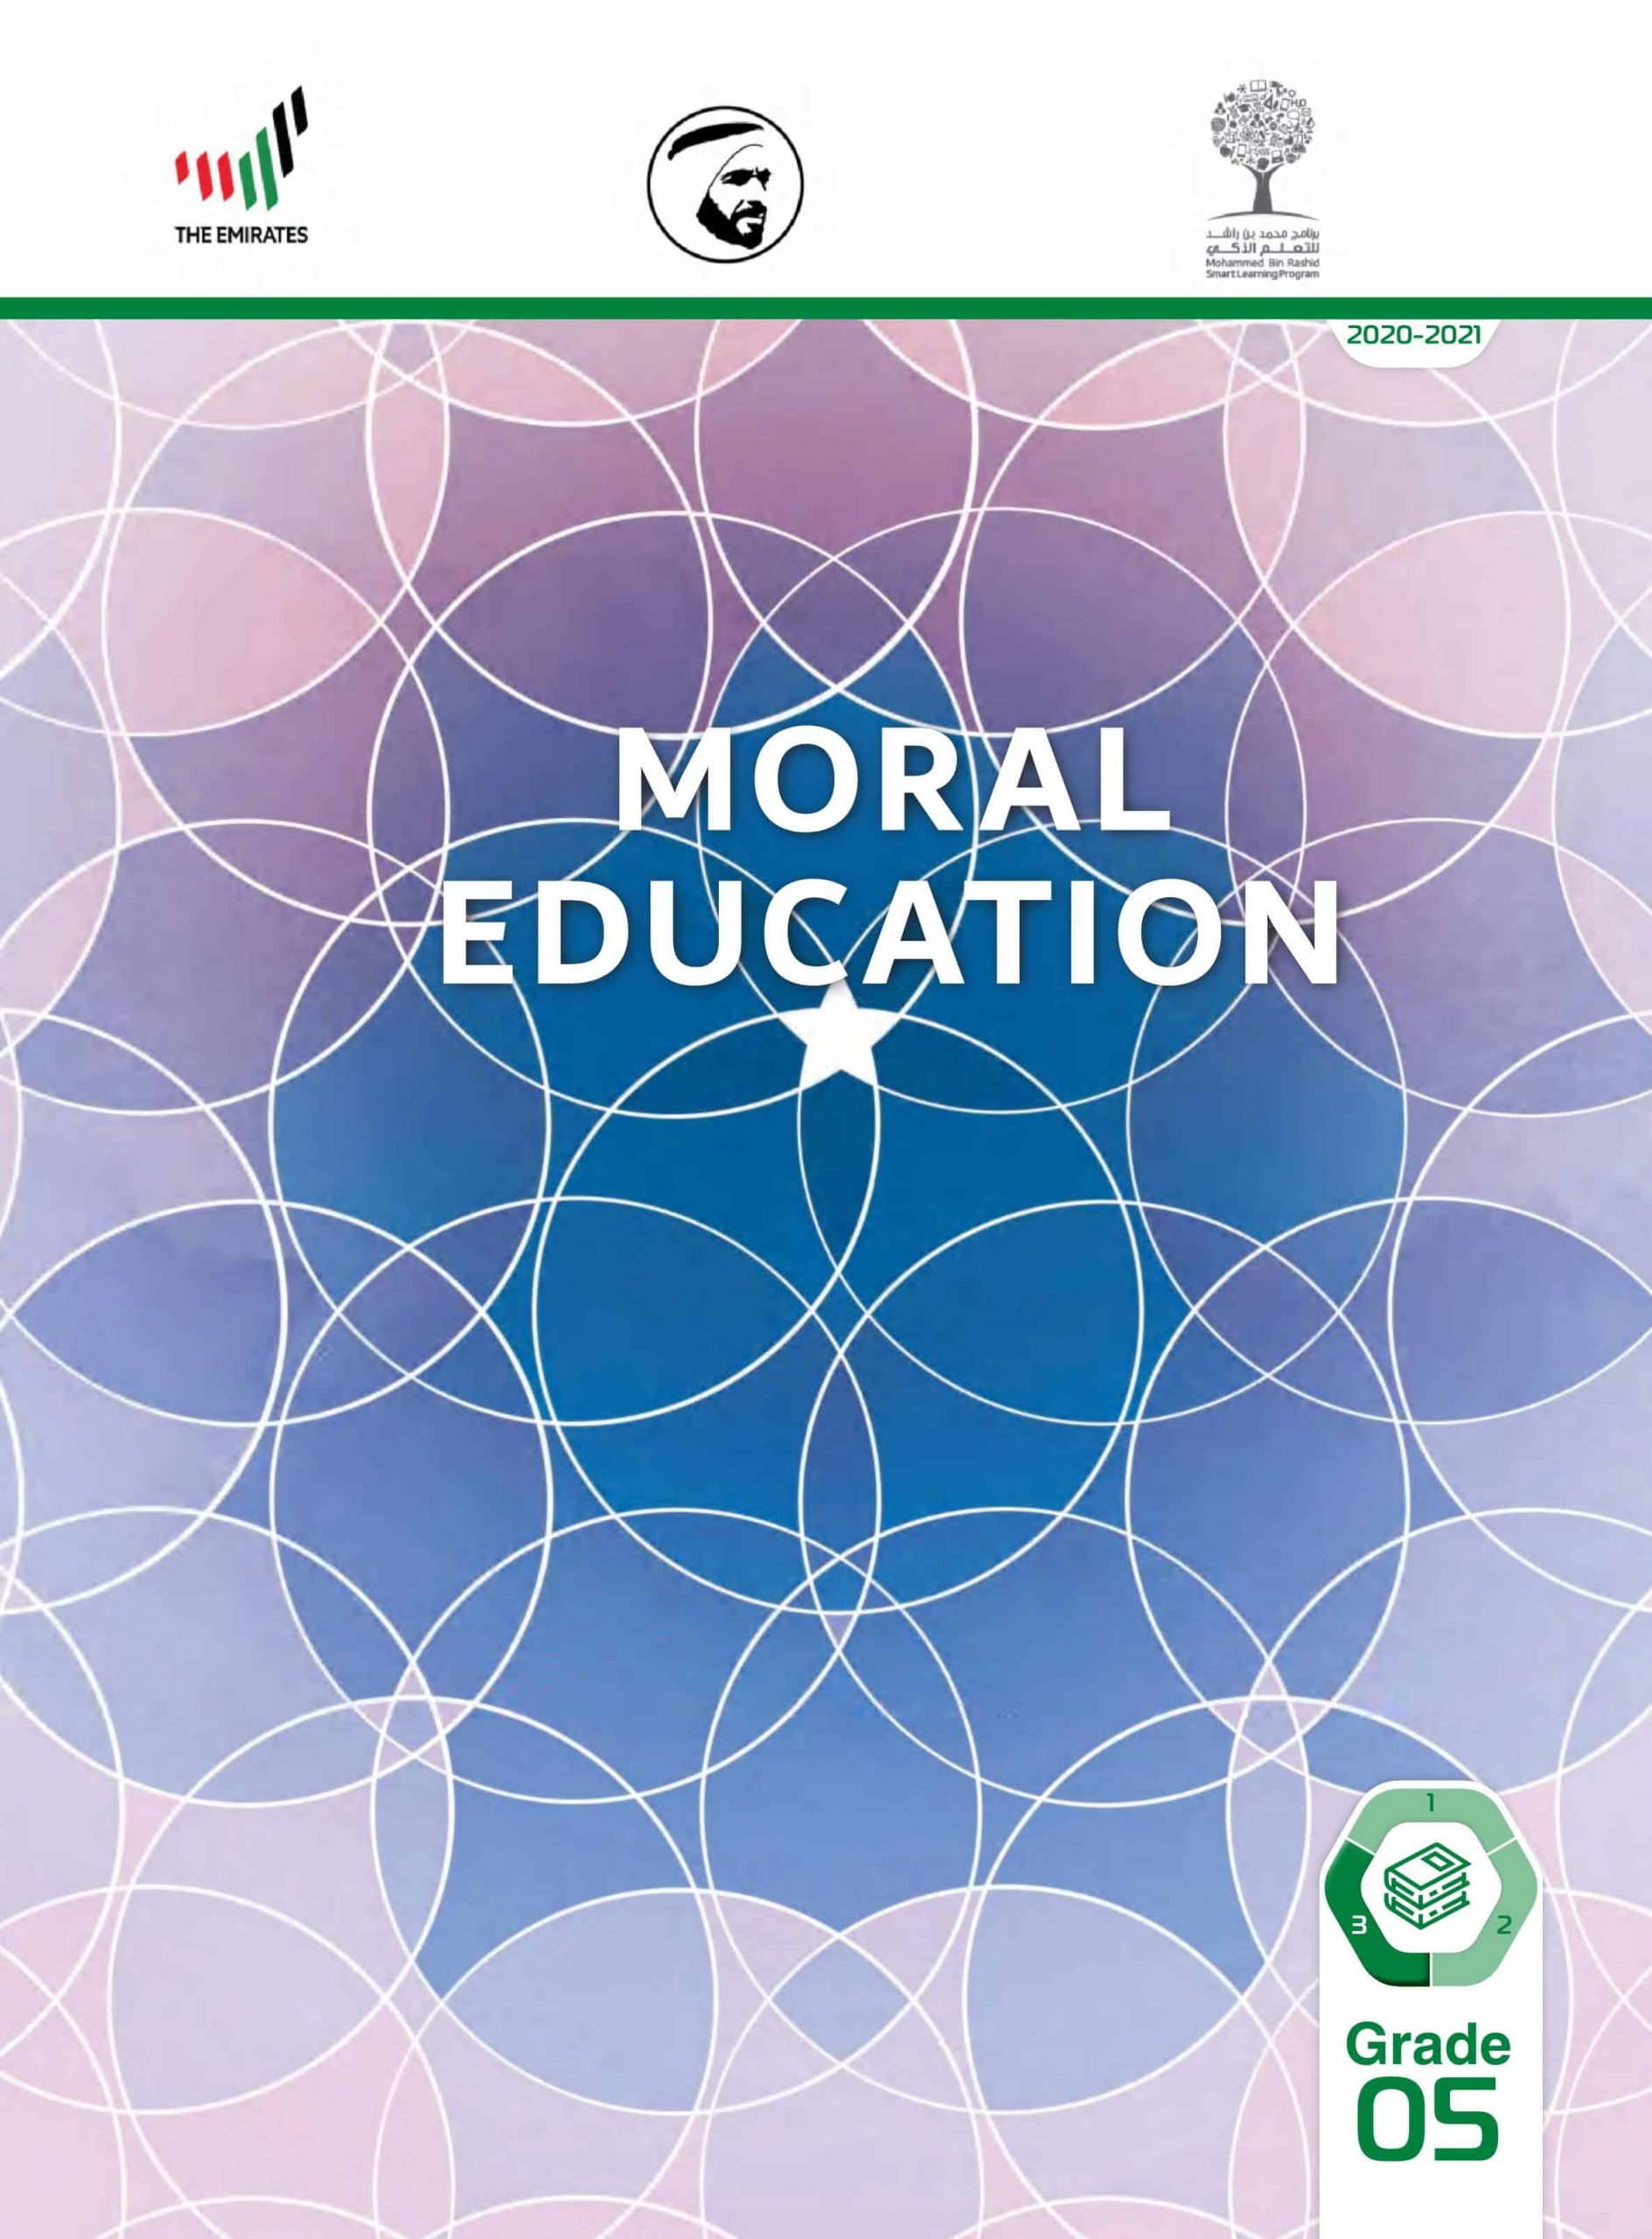 كتاب الطالب بالإنجليزي الفصل الدراسي الثالث 2020-2021 الصف الخامس مادة التربية الأخلاقية